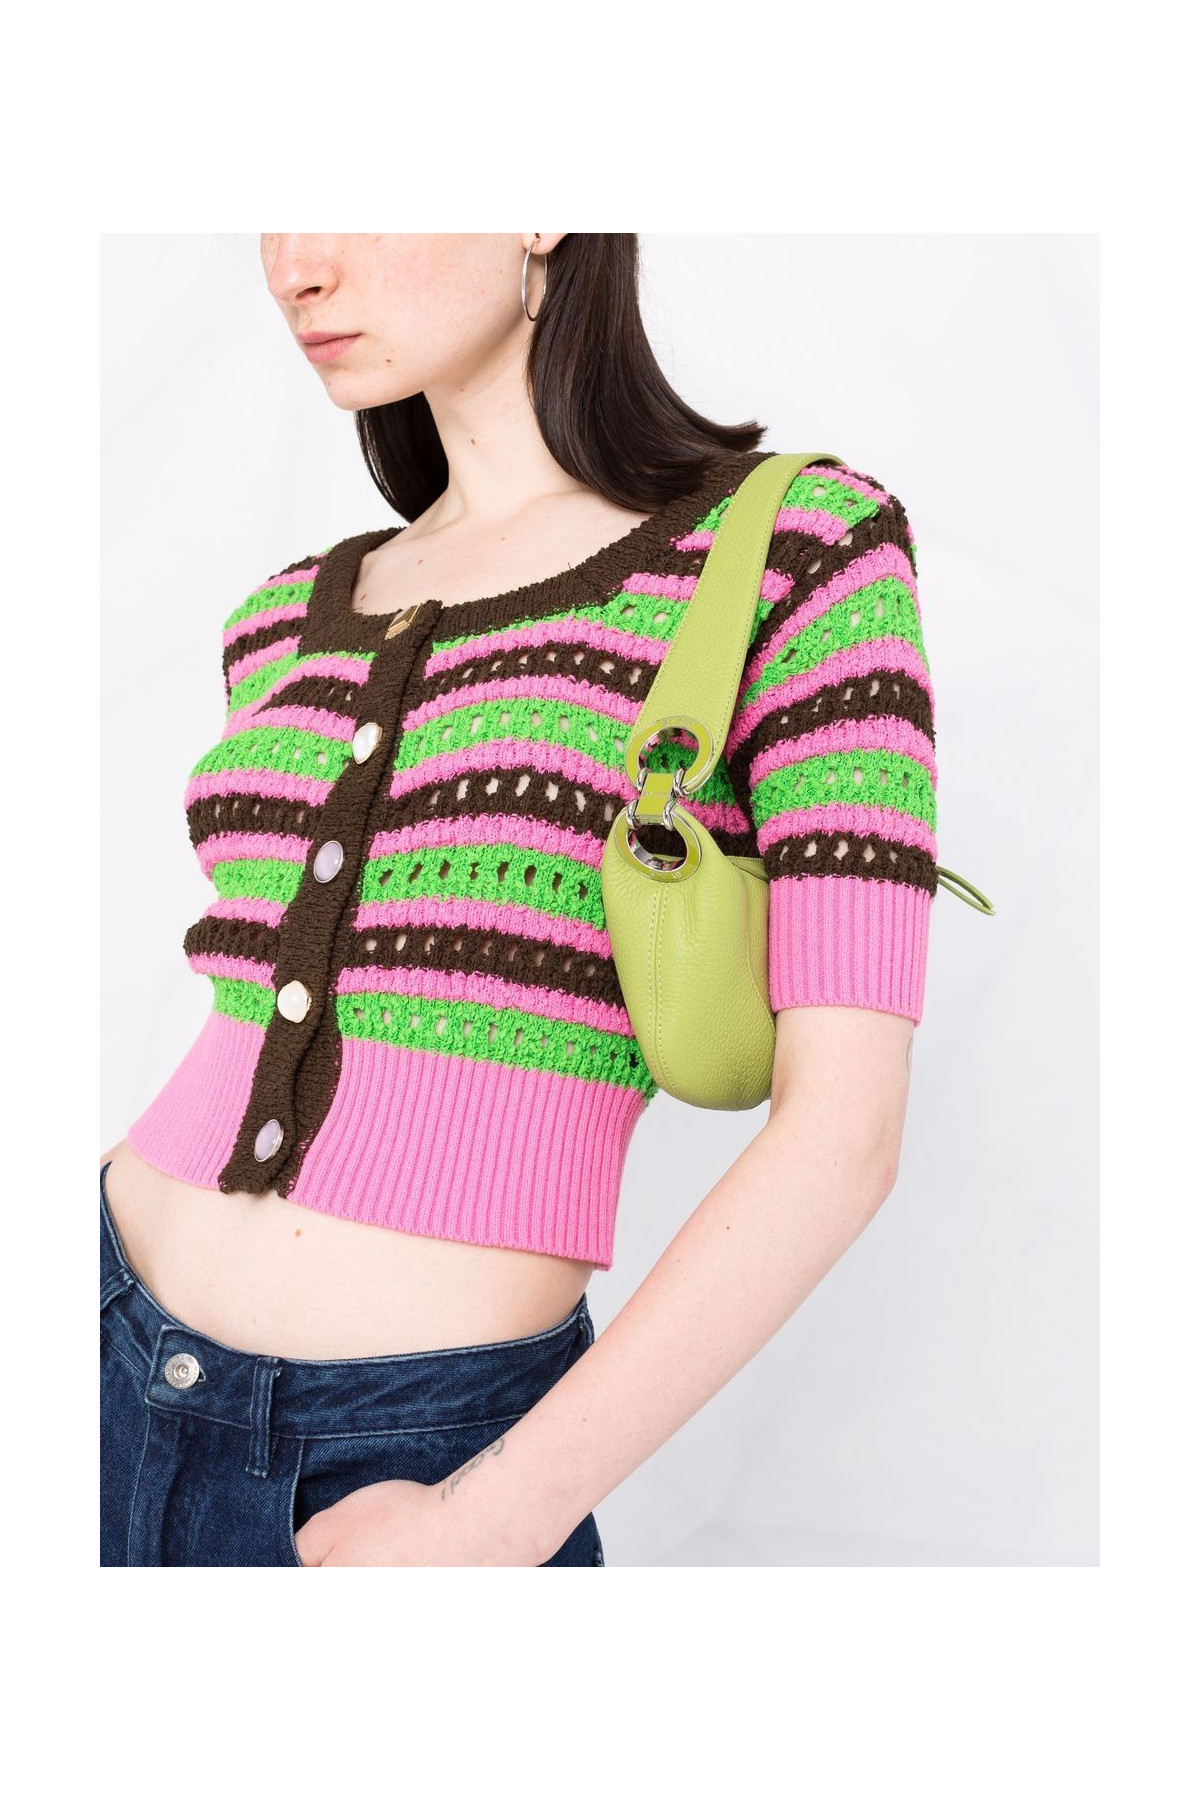 Choi Jewel Buttons Stripe Cardigan ATB737W